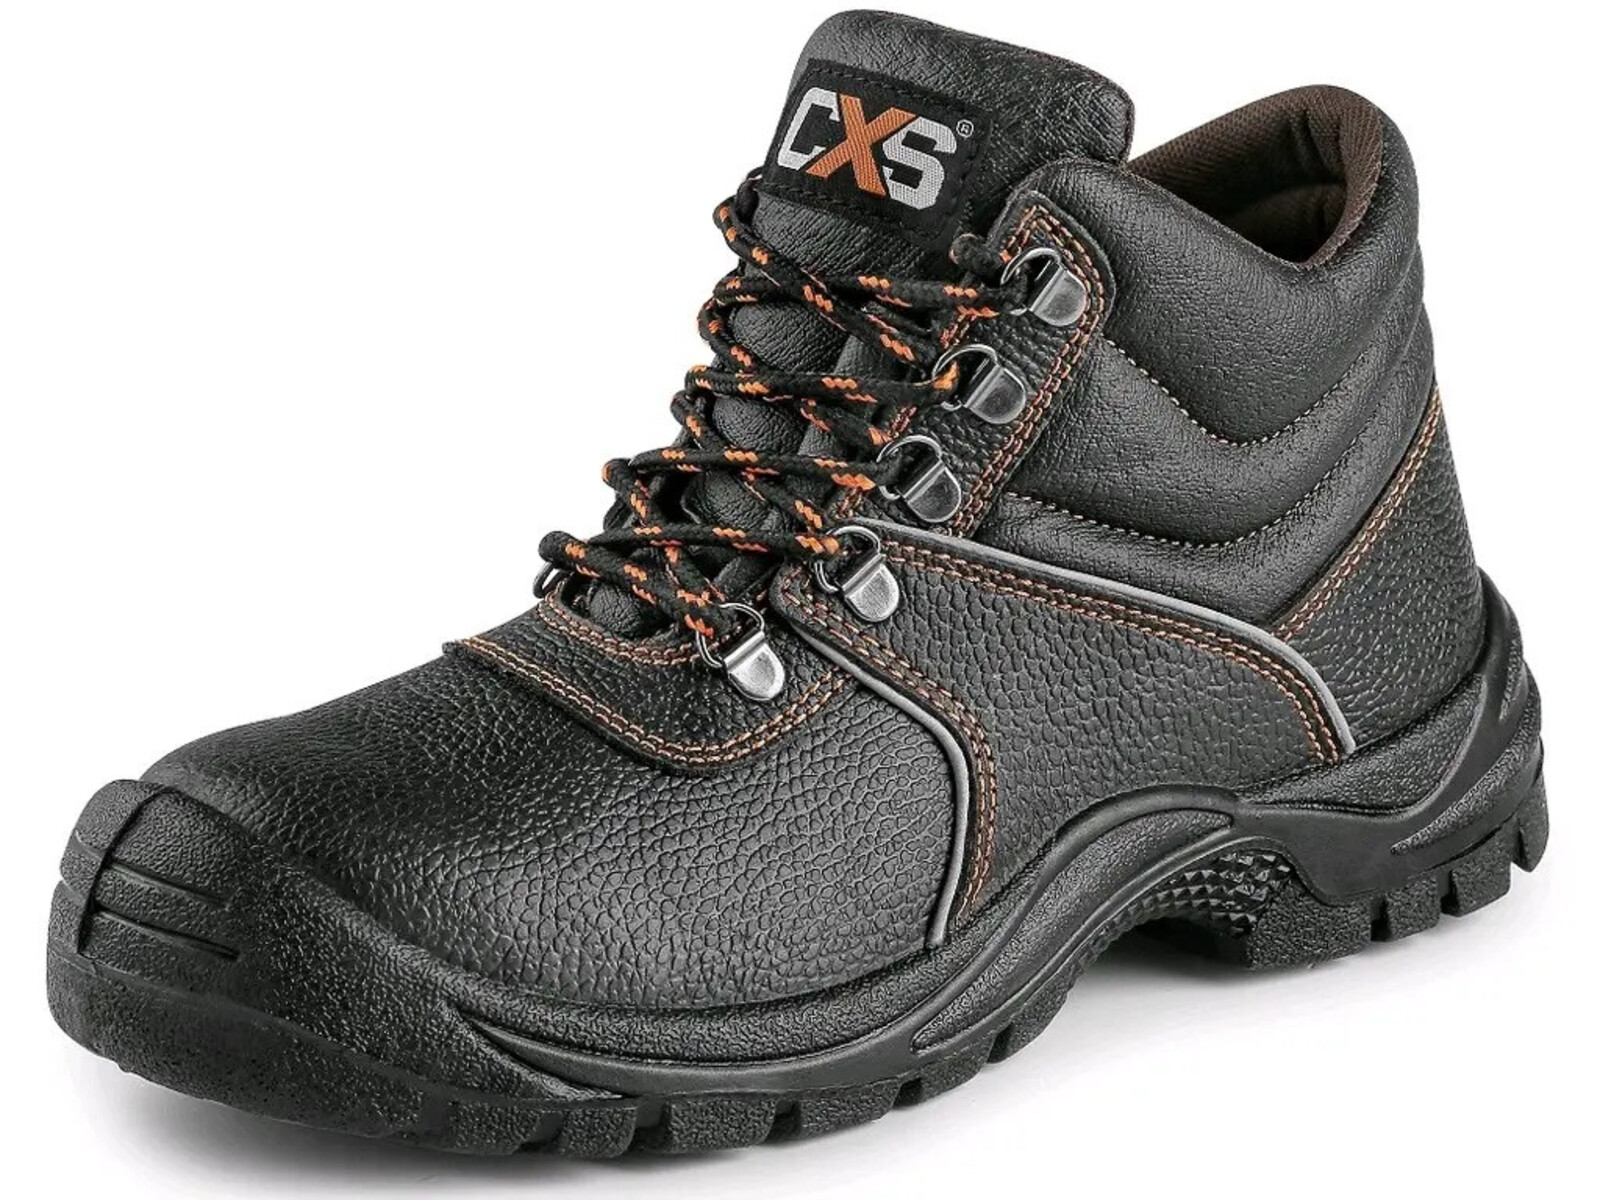 Bezpečnostná členková obuv CXS Stone Marble S2 SRC - veľkosť: 36, farba: čierna/oranžová